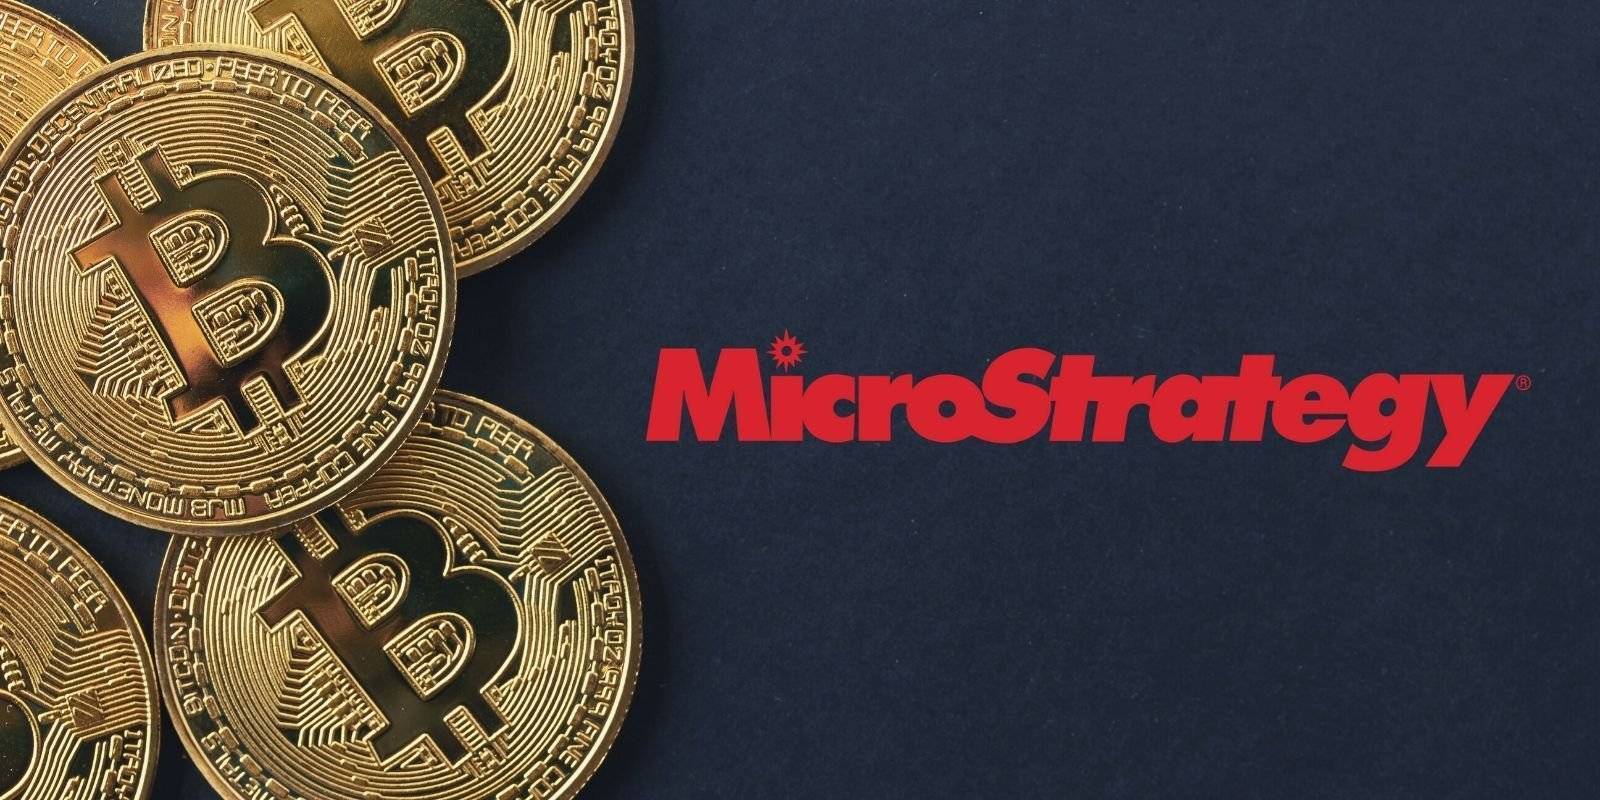 Microstrategy Mua 293 Triệu Usd Bitcoin Đang Nắm Giữ Tròn 140000 Btc